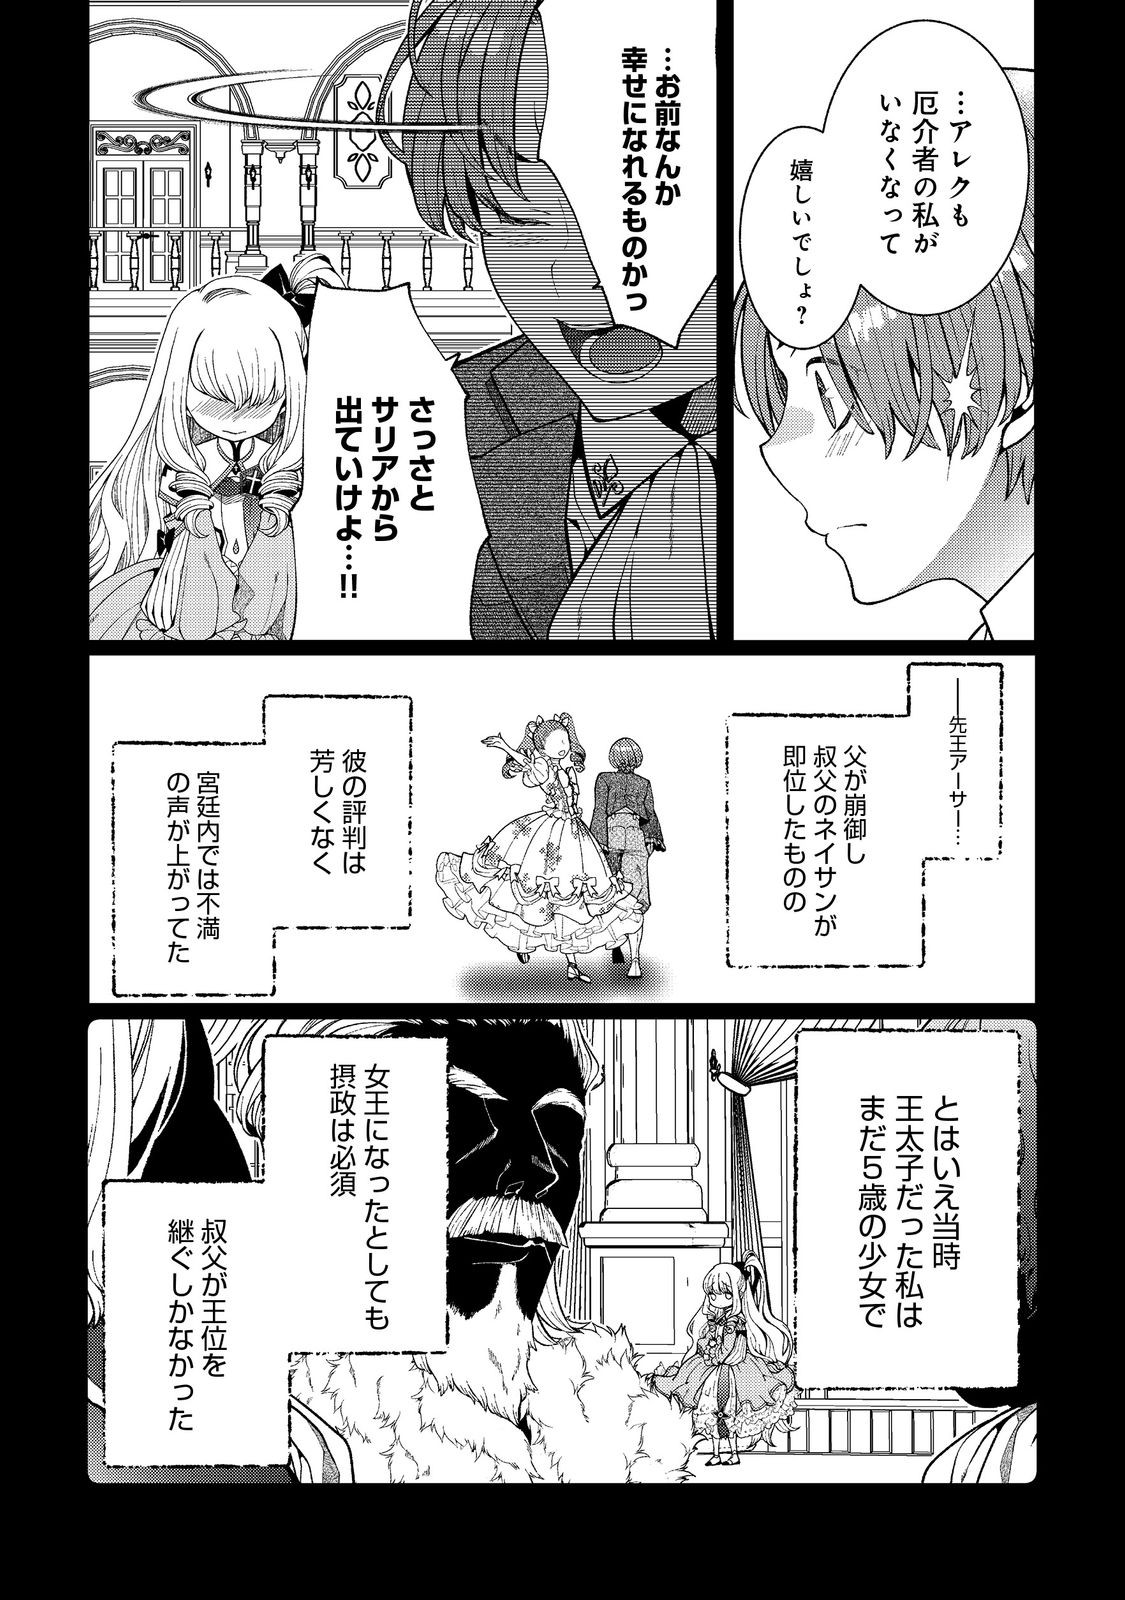 5-sai de, Ryuu no Ou Otoutou Denka no Hanayoume ni Narimashita - Chapter 3.1 - Page 4